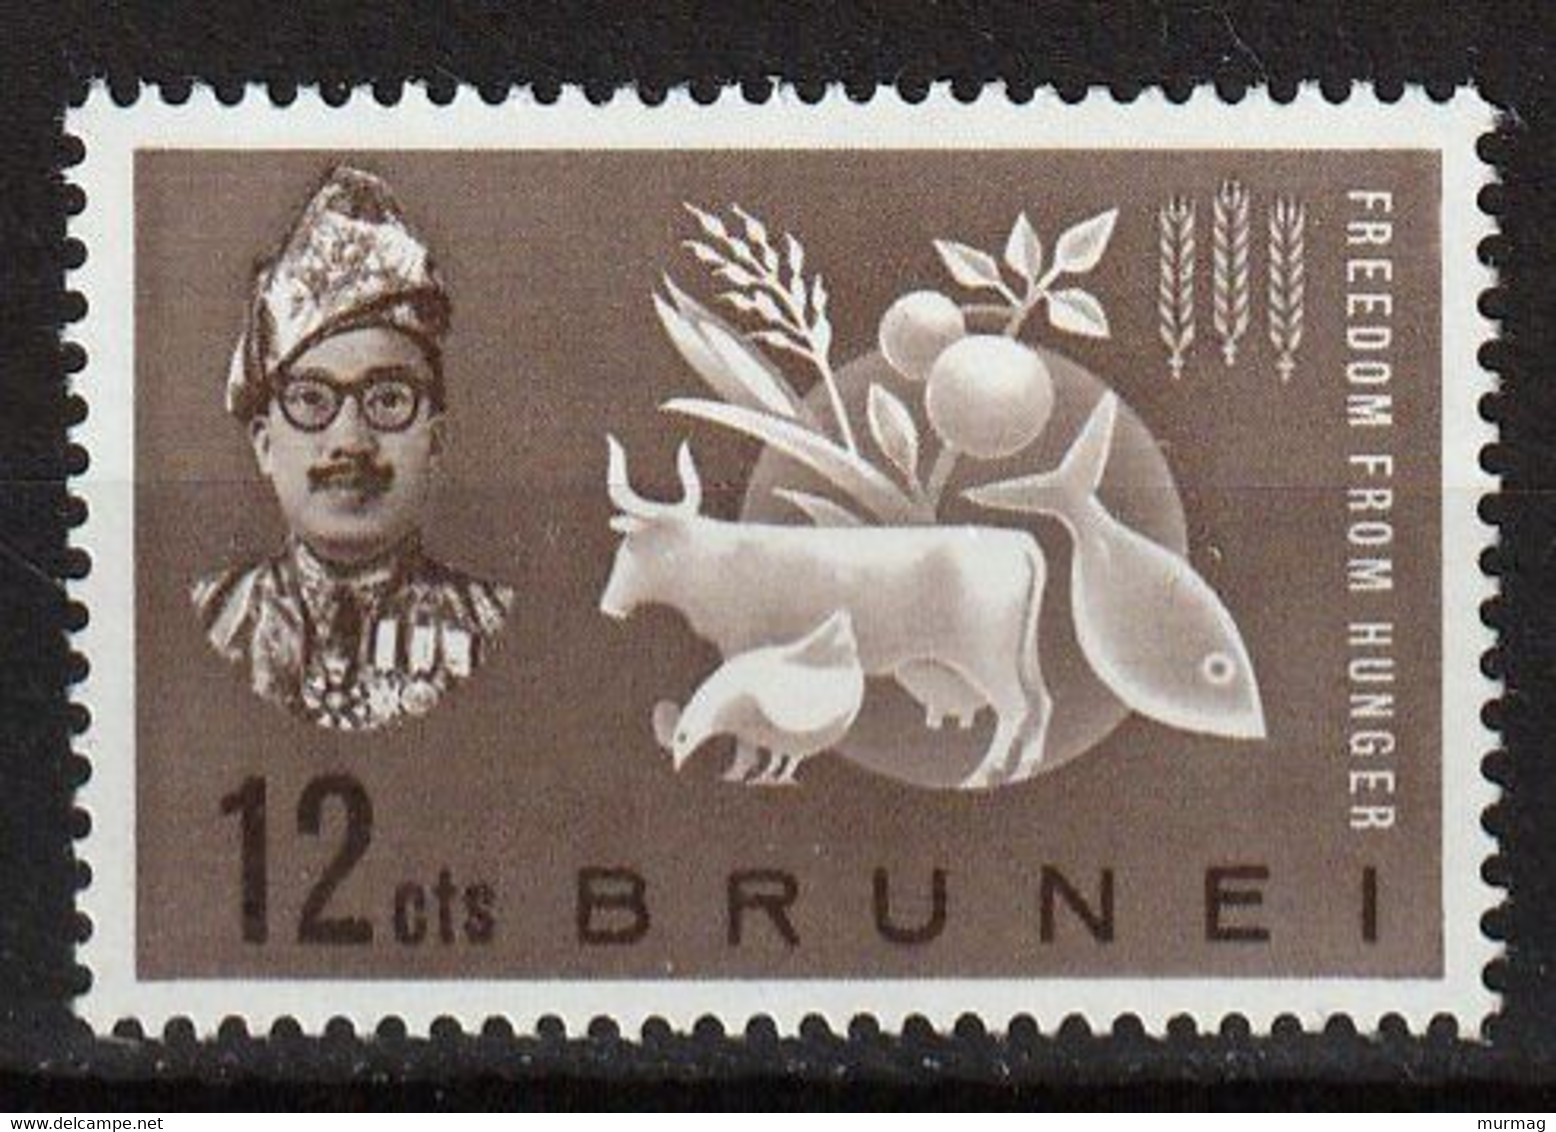 CAMPAGNE MONDIALE CONTRE LA FAIM - Brunei - Y&T N° 100 - 1963 - MNH - Against Starve